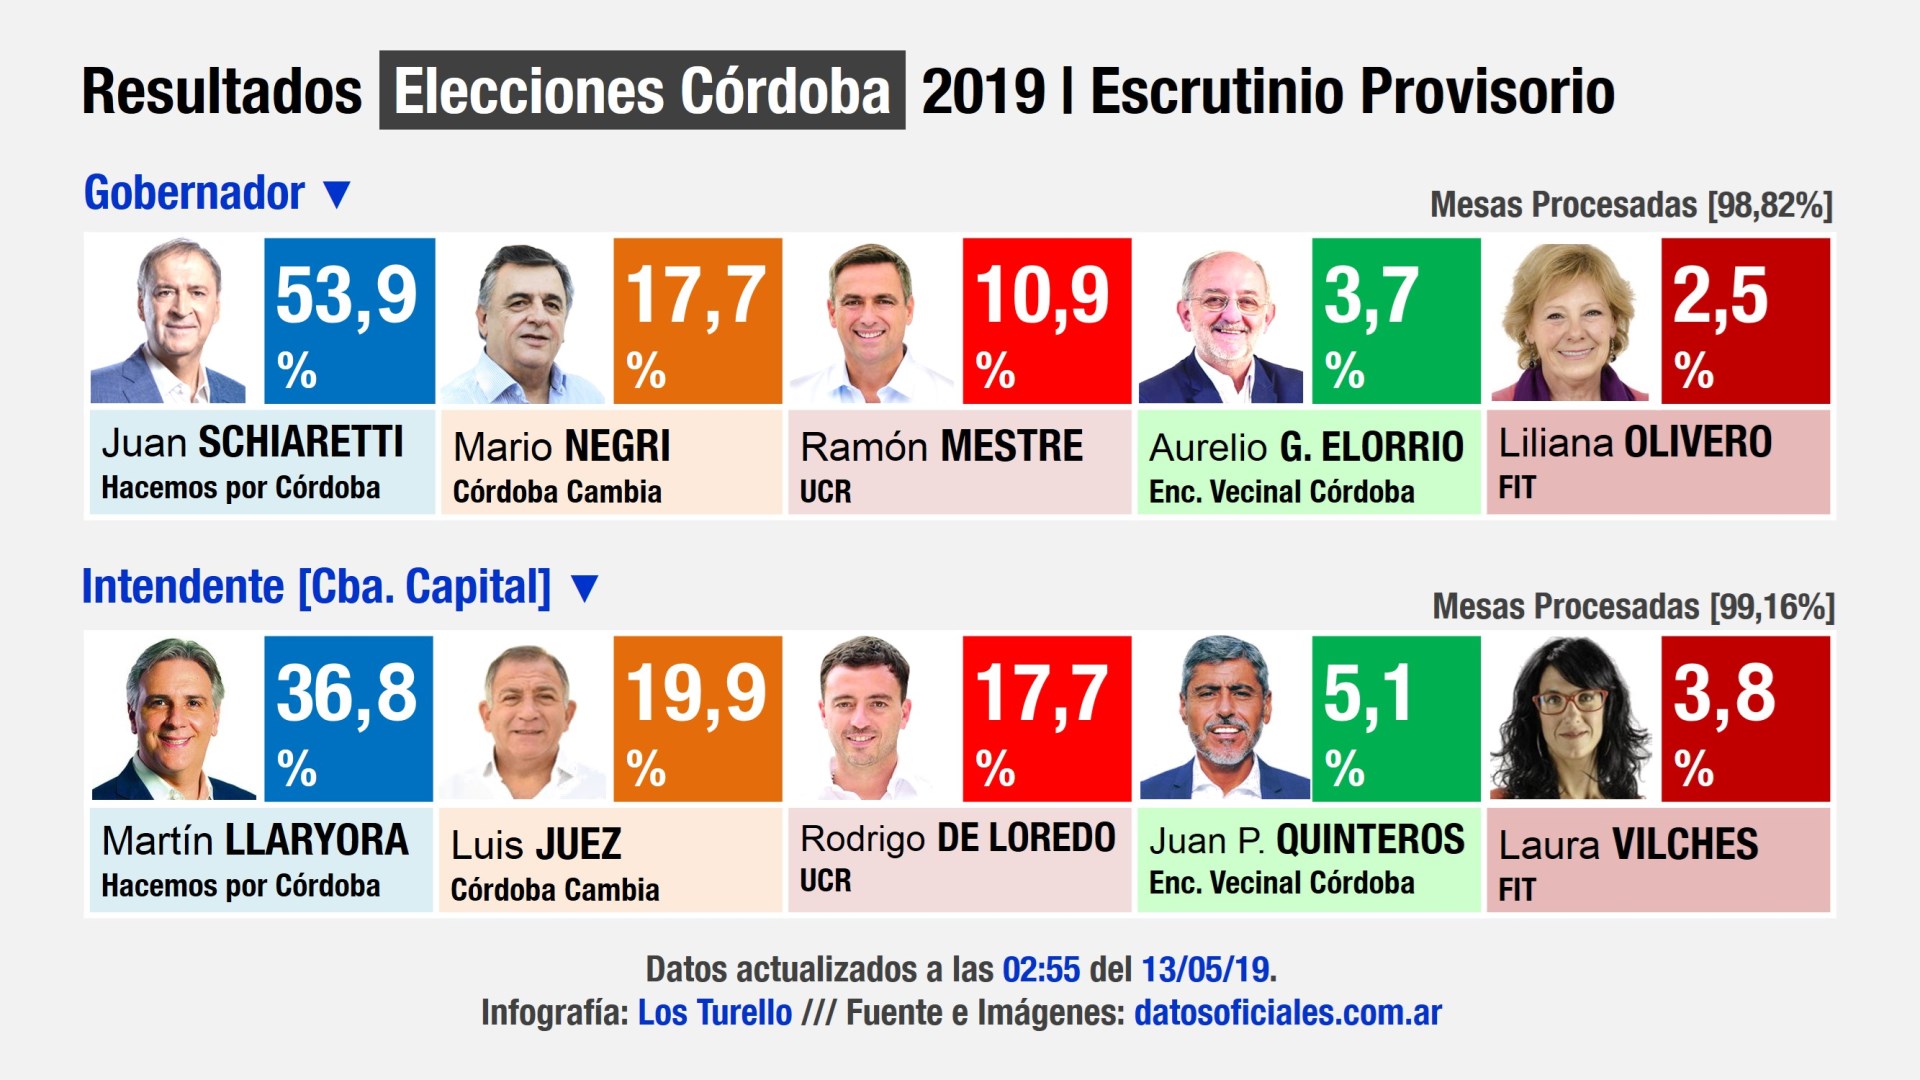 Resultado de las Elecciones Córdoba 2019 [Ganó Schiaretti y Llaryora] | Infografía: Los Turello.